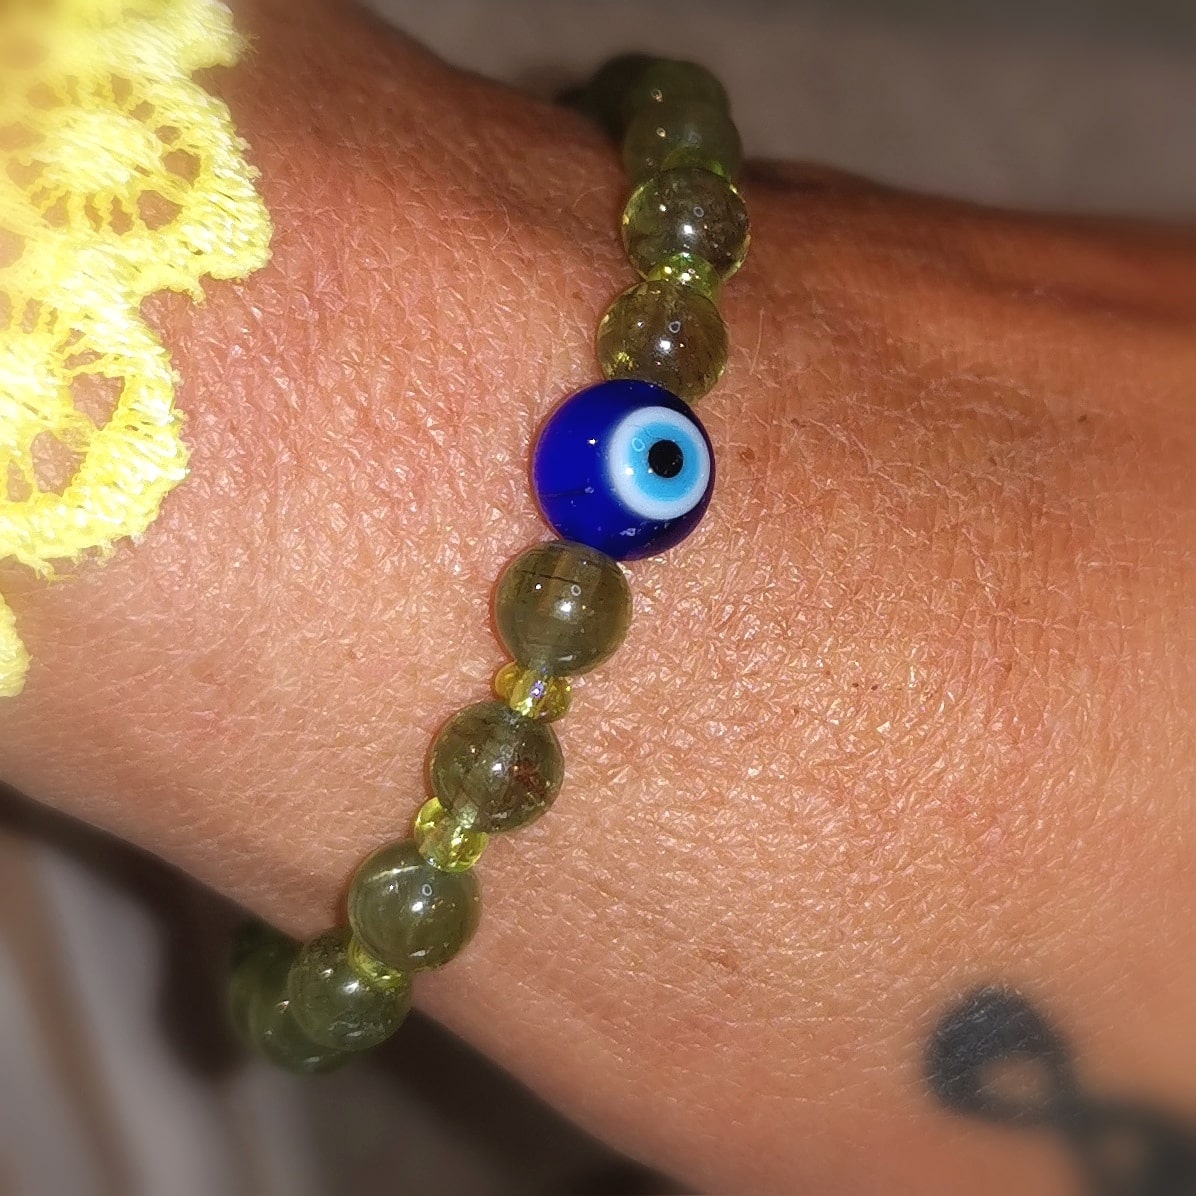 geweihtes Olivin Peridot türkisches Auge, Auge von Nazar Edelstein Heilstein Karma Armband, edle Hippie Mode, Schutz und Lebensfreude